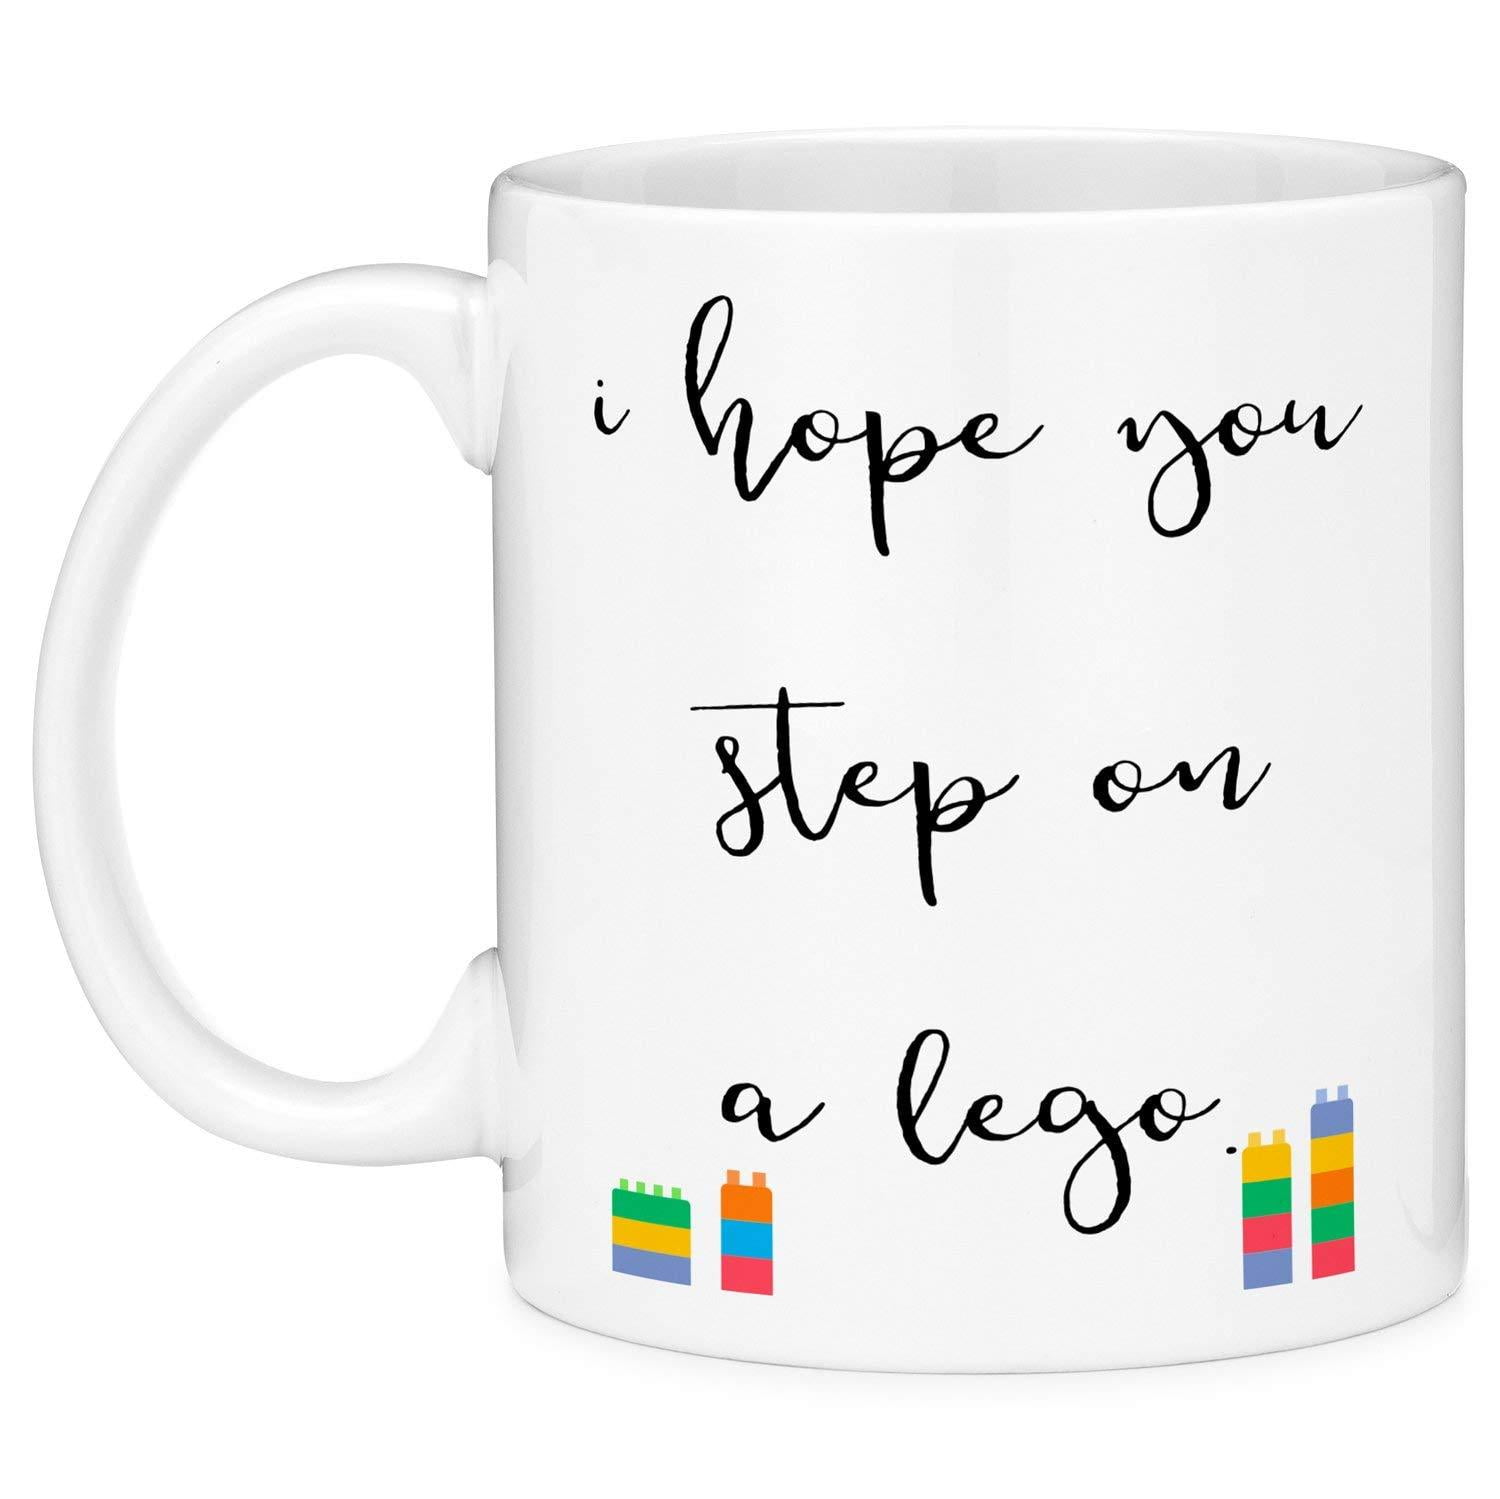 Lego Trippin' (Coffee Mug)